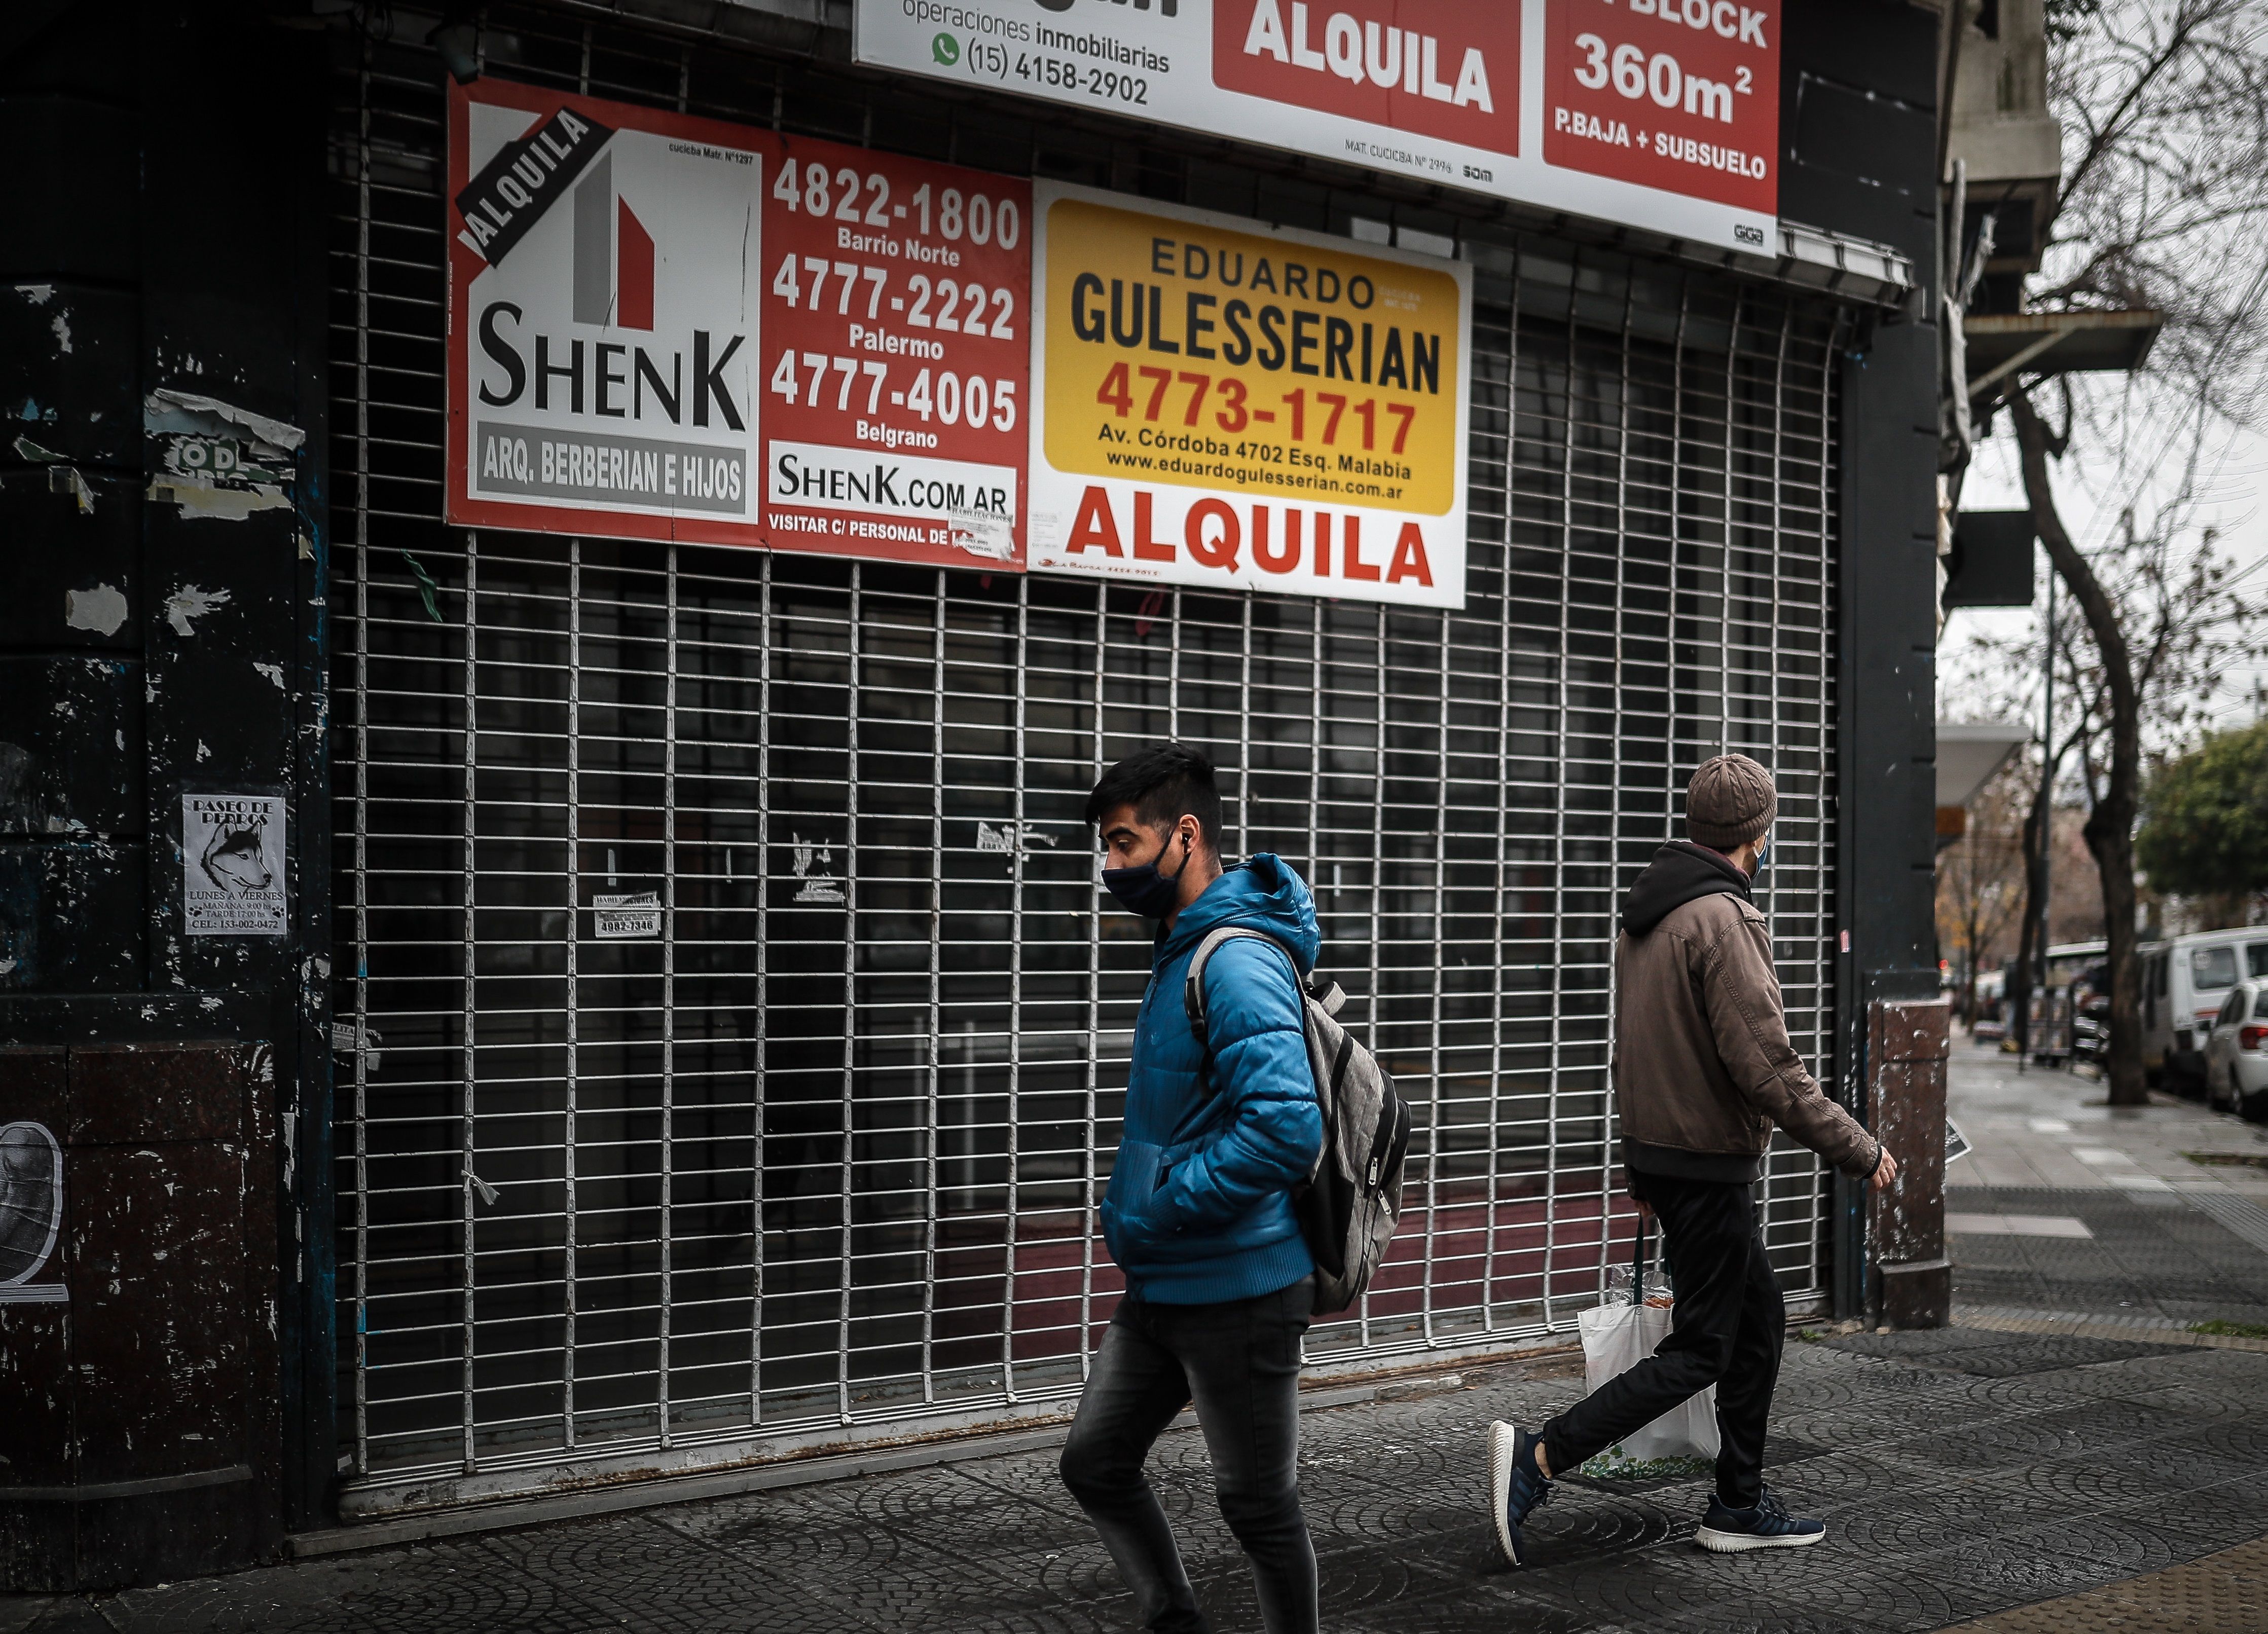 Locales comerciales han cerrado en muchas partes del mundo a causa del coronavirus. (Foto Prensa Libre: EFE)